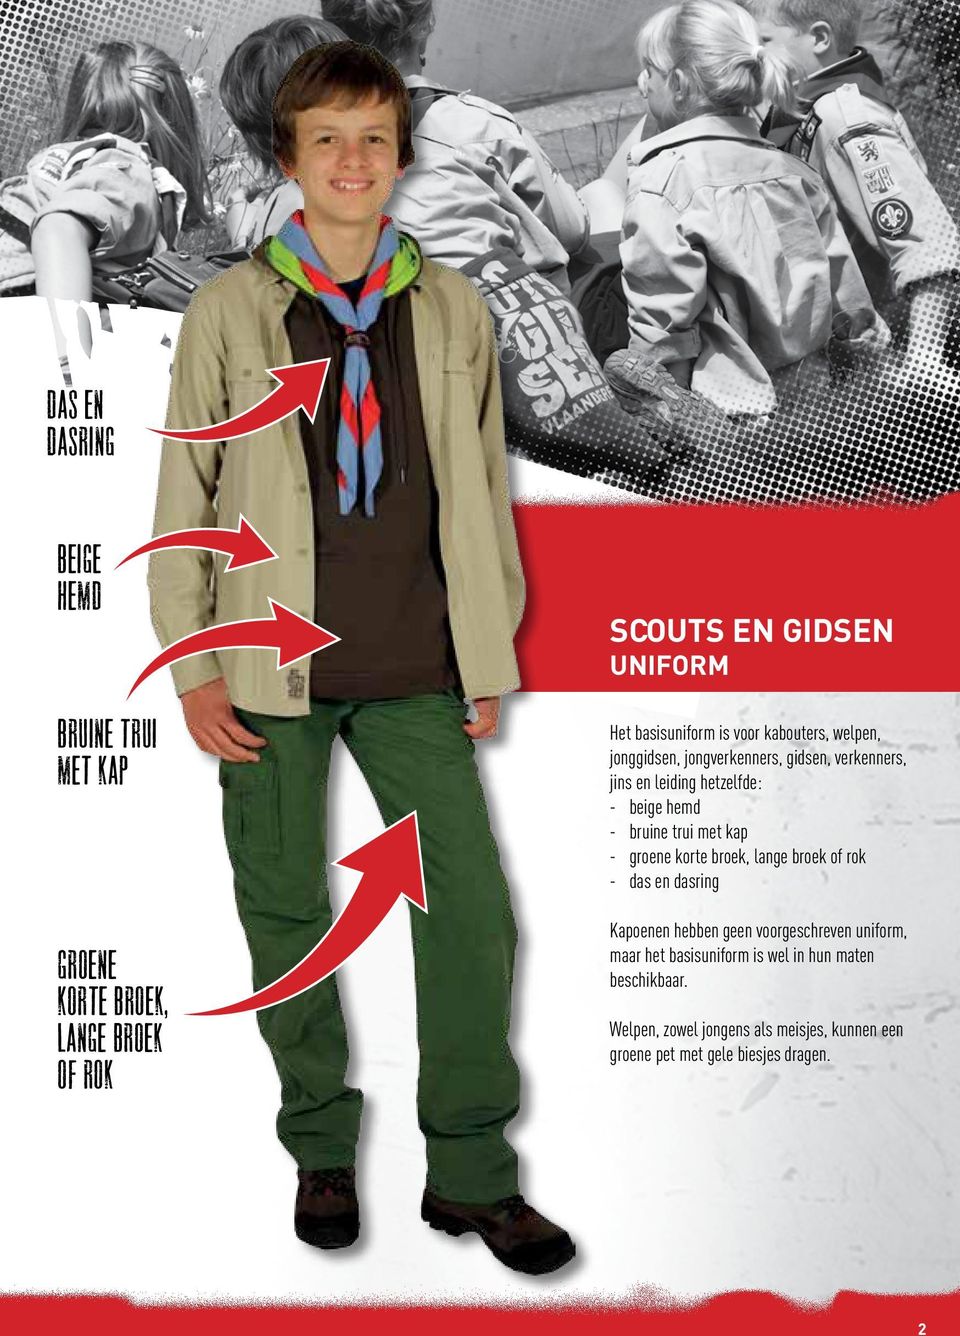 trui met kap - groene korte broek, lange broek of rok - das en dasring Kapoenen hebben geen voorgeschreven uniform, maar het